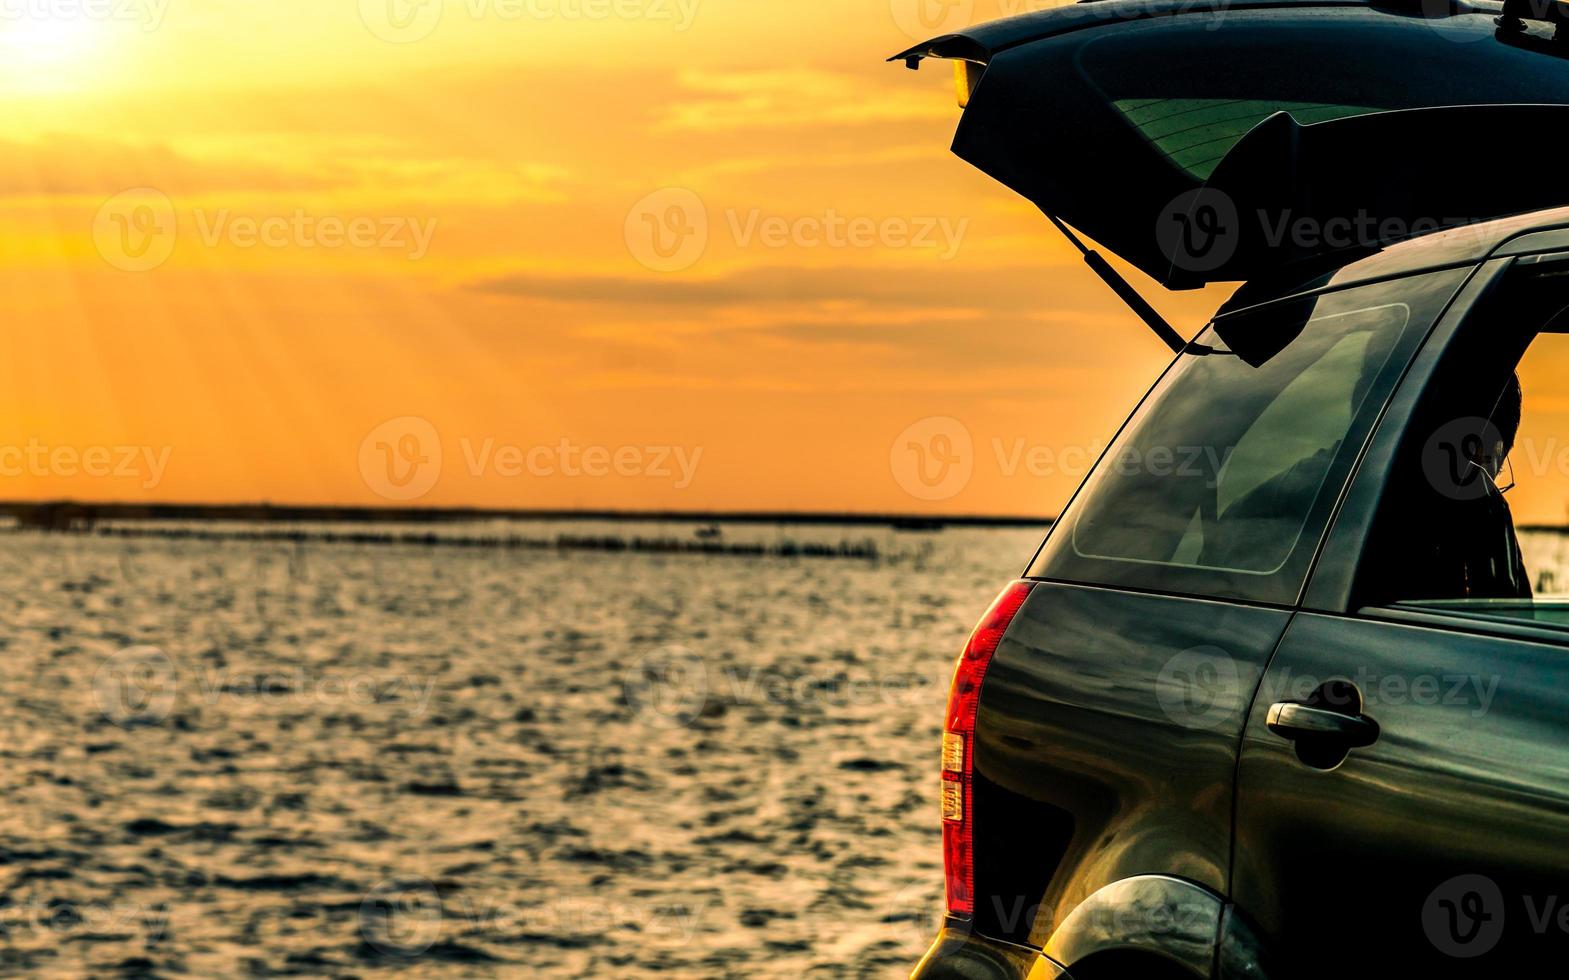 svart kompakt suv-bil med sport och modern design parkerad på betongväg vid havet i solnedgången. miljövänlig teknik. roadtrip resor på semester på stranden och öppen bil lastbil foto